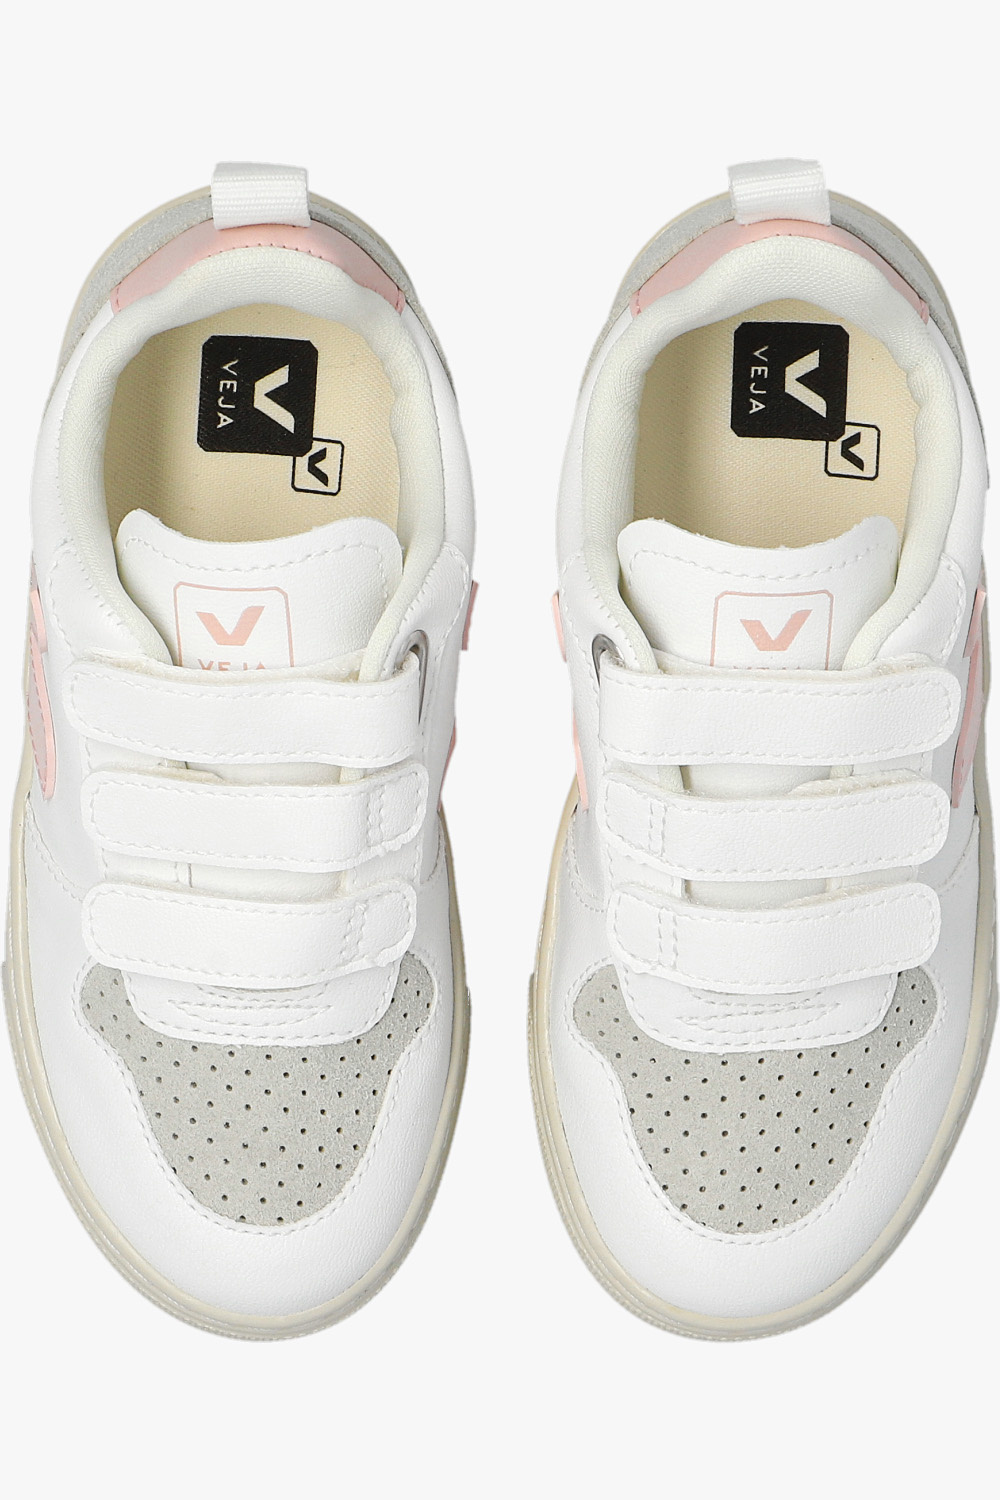 Veja Kids ‘V-10 C.W.L.’ sneakers